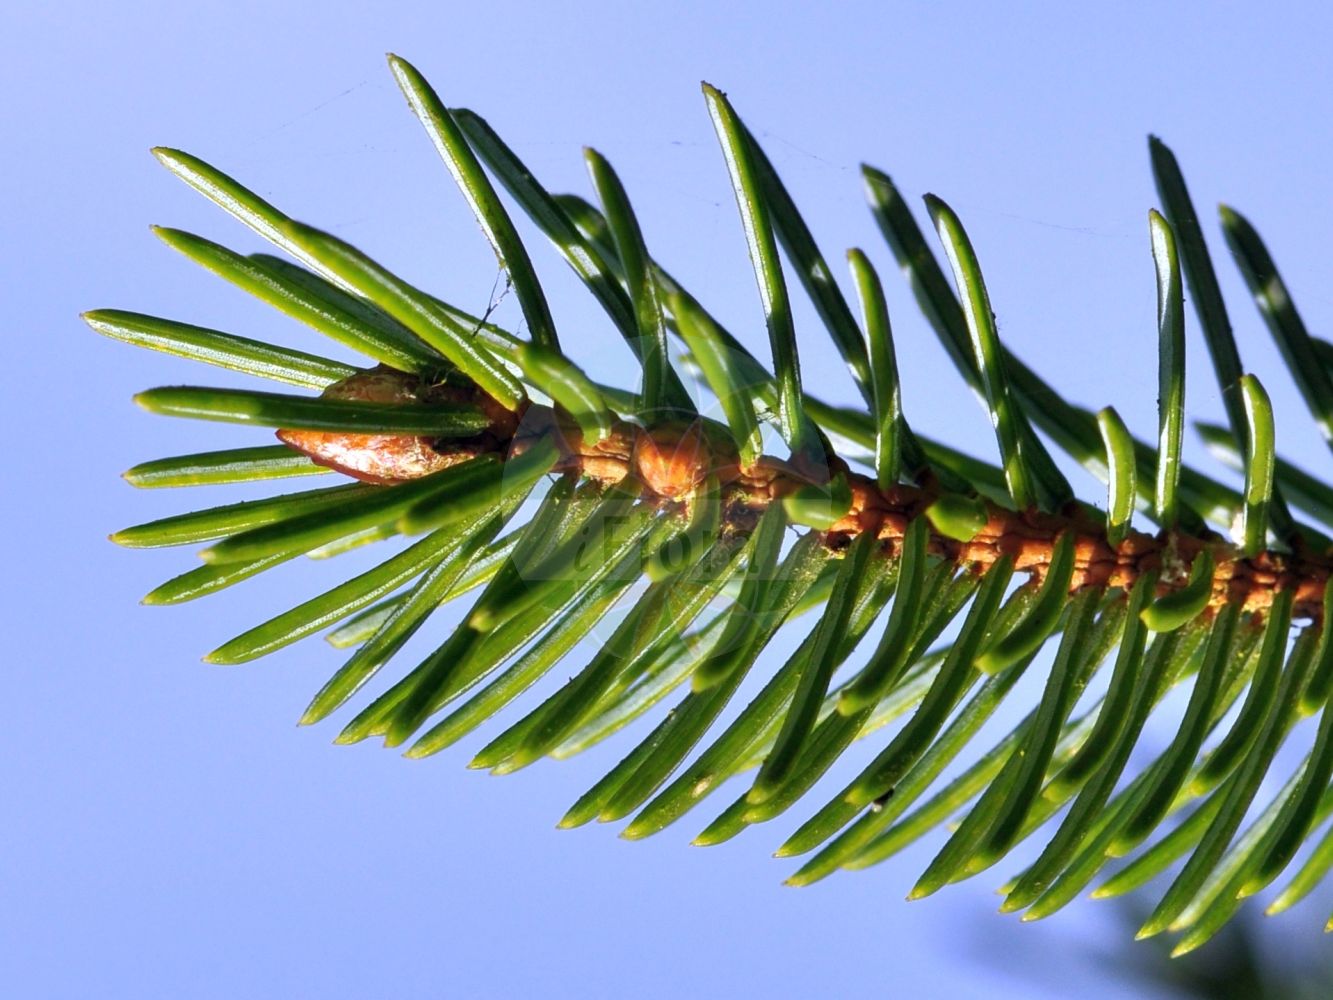 Foto von Picea sitchensis (Sitka-Fichte - Sitka Spruce). ---- Photo of Picea sitchensis (Sitka-Fichte - Sitka Spruce).(Picea sitchensis,Sitka-Fichte,Sitka Spruce,Abies falcata,Picea falcata,Picea menziesii,Picea sitchensis,Pinus menziesii,Pinus sitchensis,Sitka-Fichte,Sitka Spruce,Coast Spruce,Picea,Fichte,Spruce,Pinaceae,Kieferngewächse,Pine family)